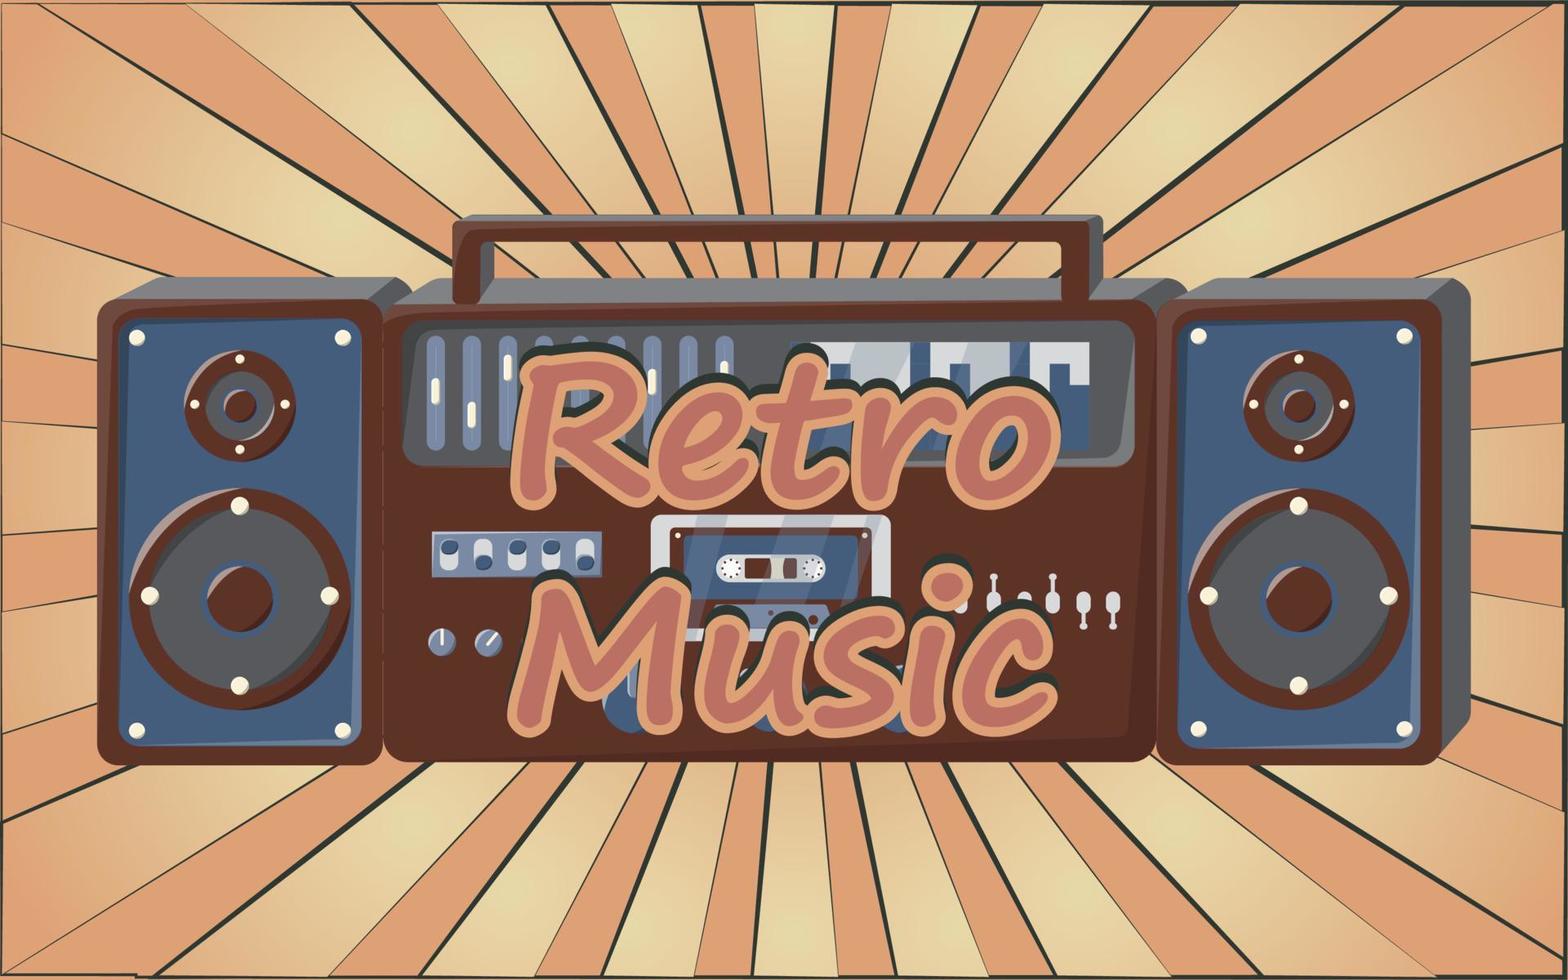 oud retro wijnoogst poster met muziek- cassette plakband opnemer met magnetisch plakband babbel Aan haspels en luidsprekers van de jaren 70, jaren 80, 90s de achtergrond van de bruin stralen van de zon. vector illustratie